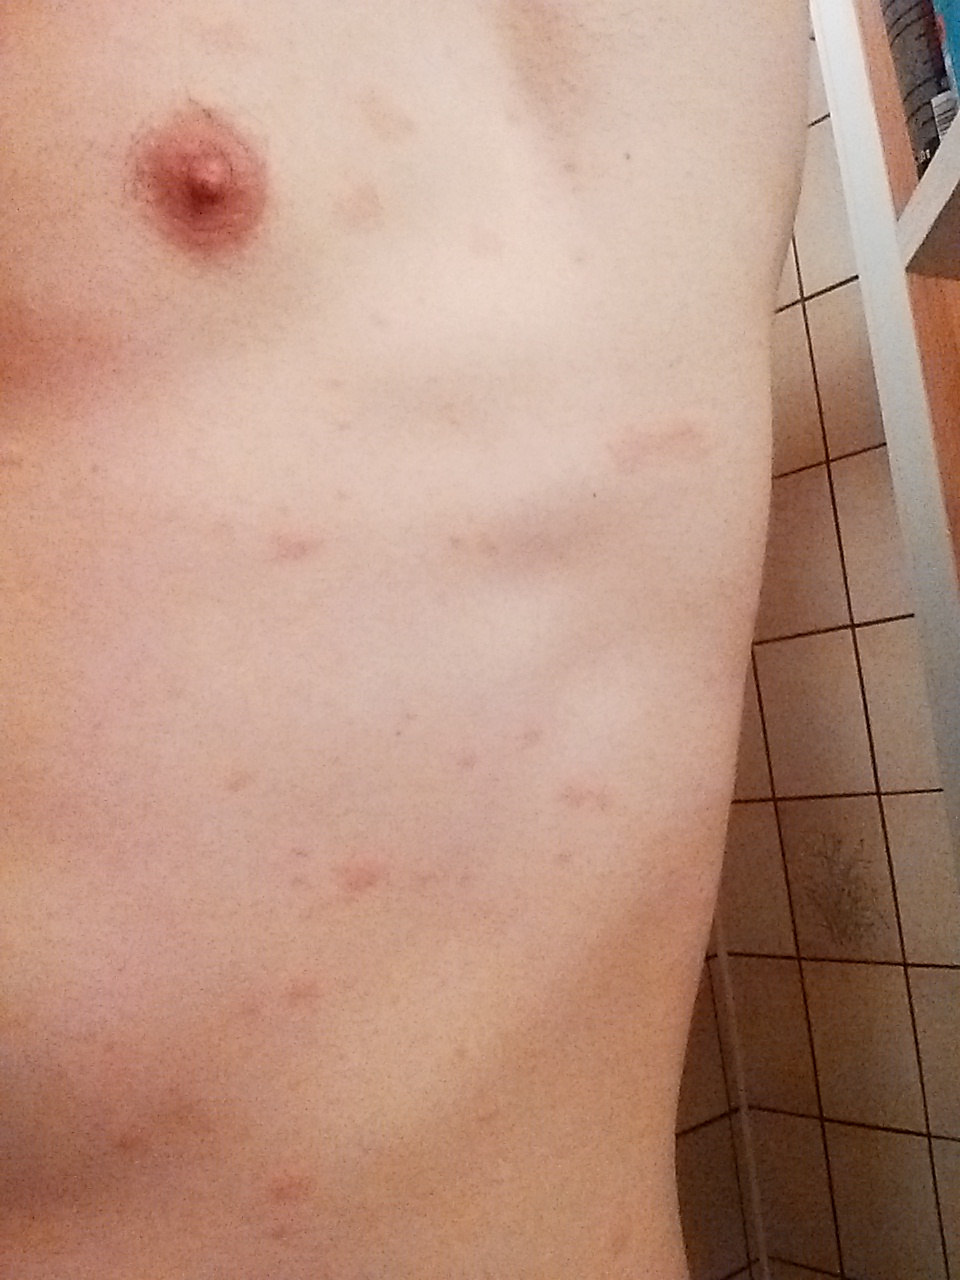 50+ Flecken auf der haut bilder , Sich ausbreitende rote Flecken auf der Haut... (Krankheit, Allergie, Pilze)